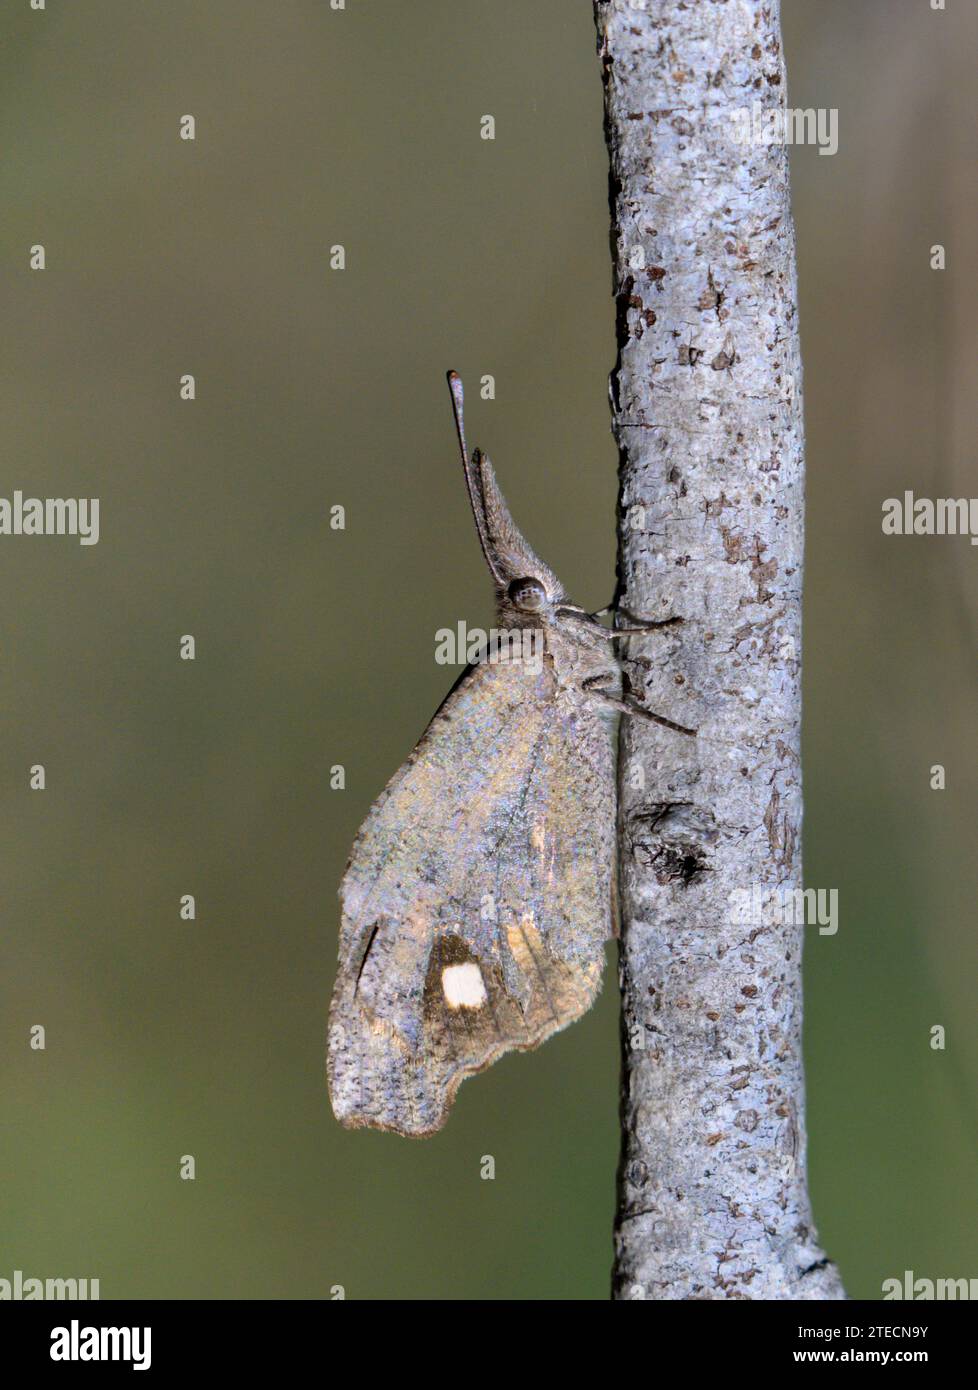 Muso americano o farfalla muso comune (Libytheana carinenta) mimetizzato su un ramo di legno, Bentsen-Rio grande Valley State Park, Texas, USA. Foto Stock